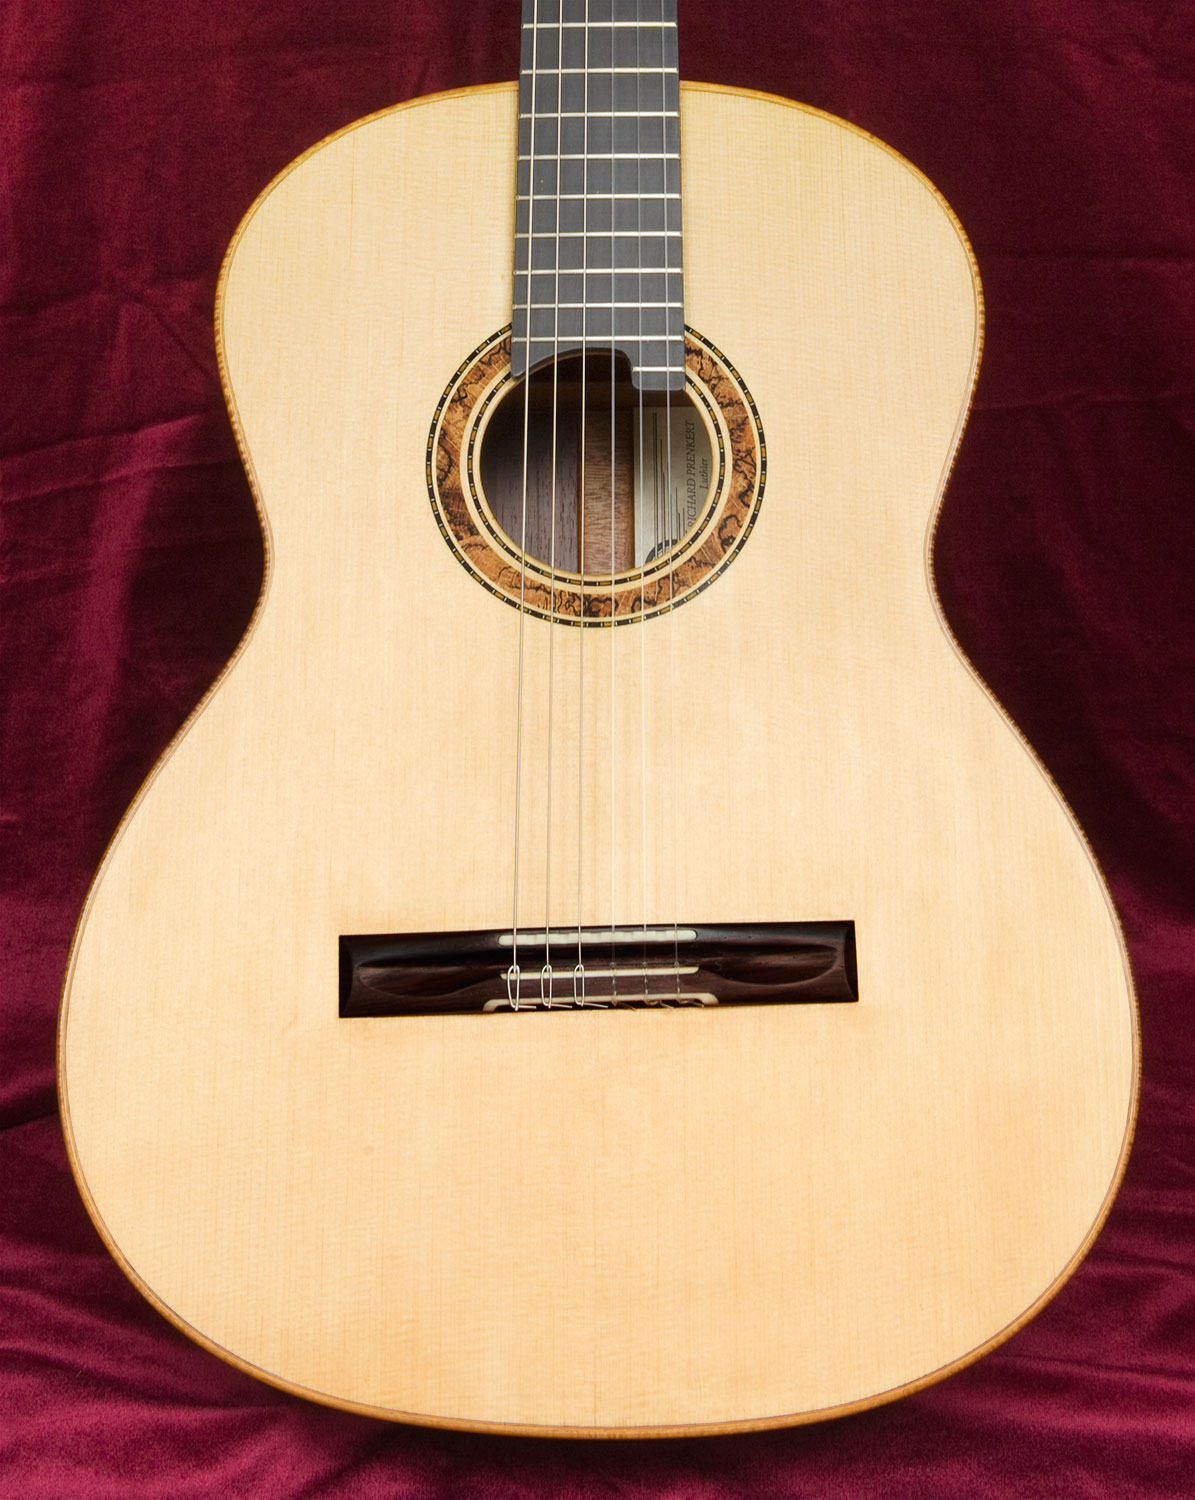 Brasilian Rosewood guitar front close-up view